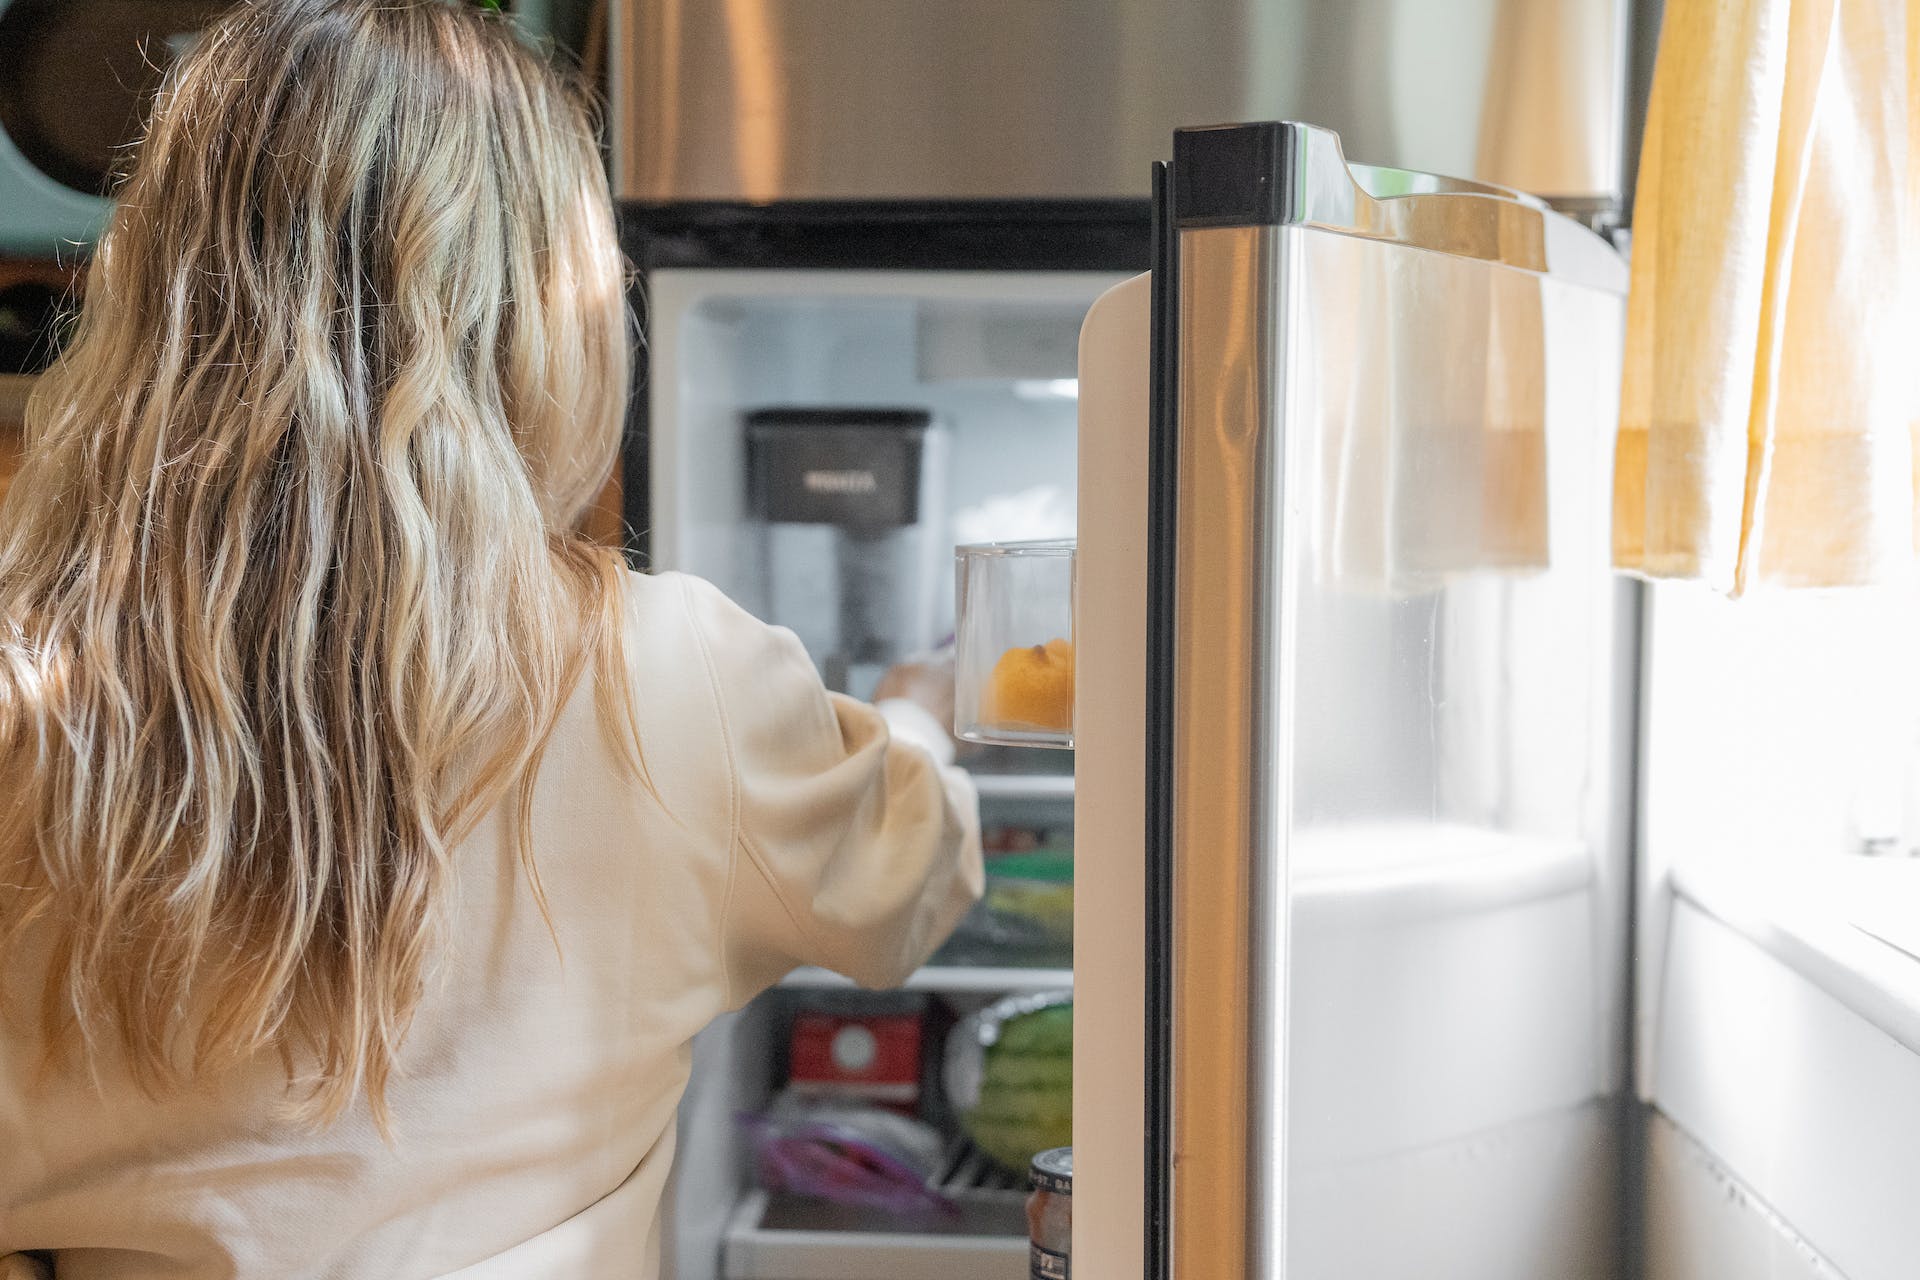 Personne debout devant un réfrigérateur | Source : Pexels